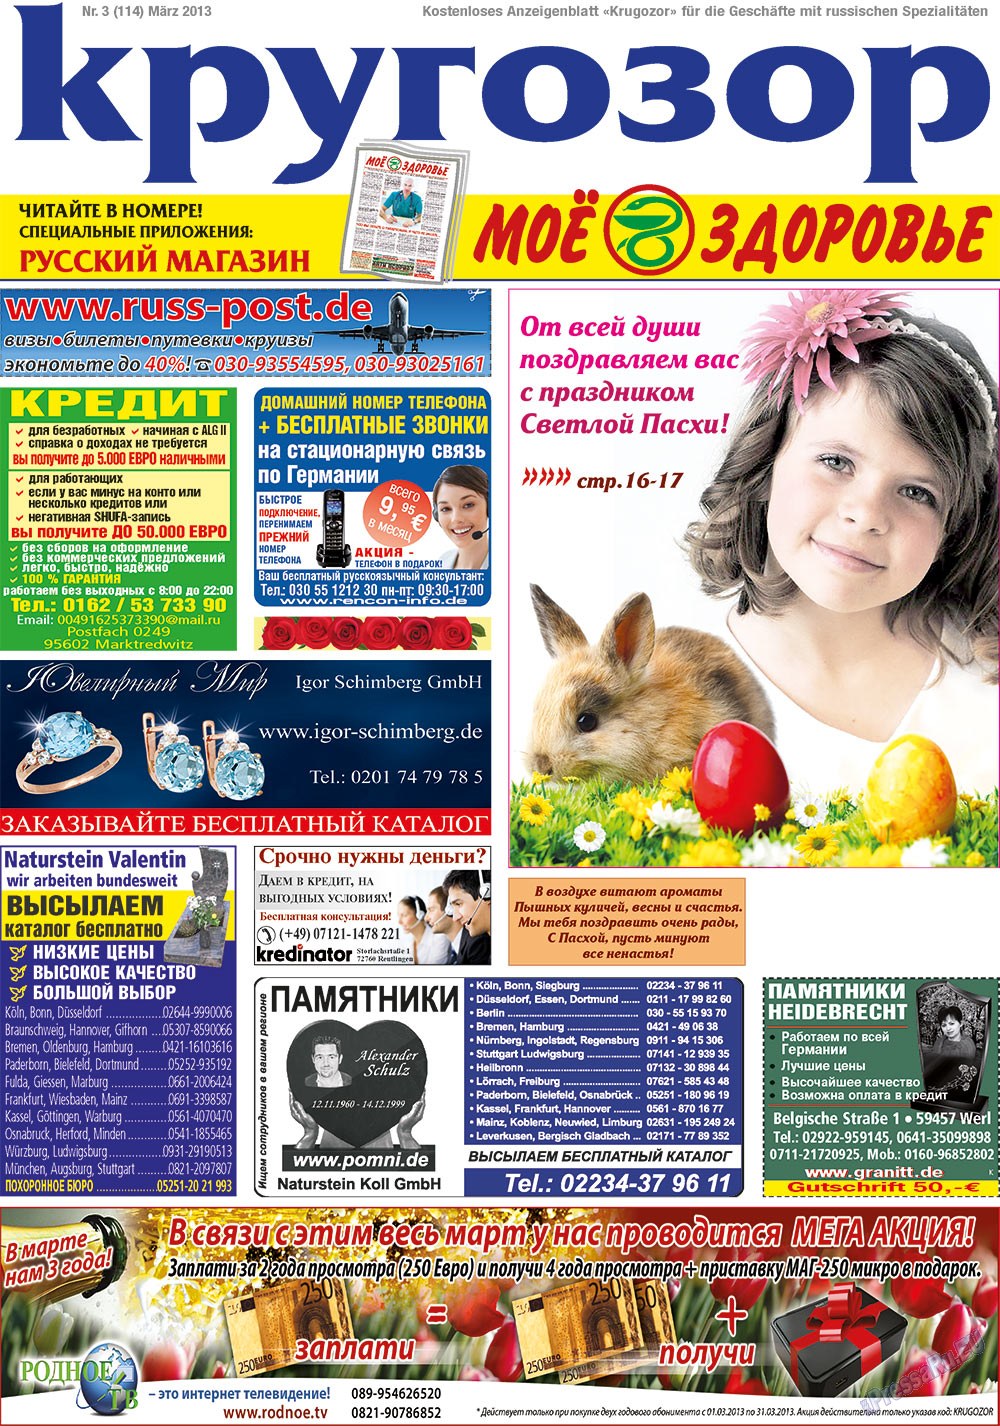 Кругозор (газета). 2013 год, номер 3, стр. 1